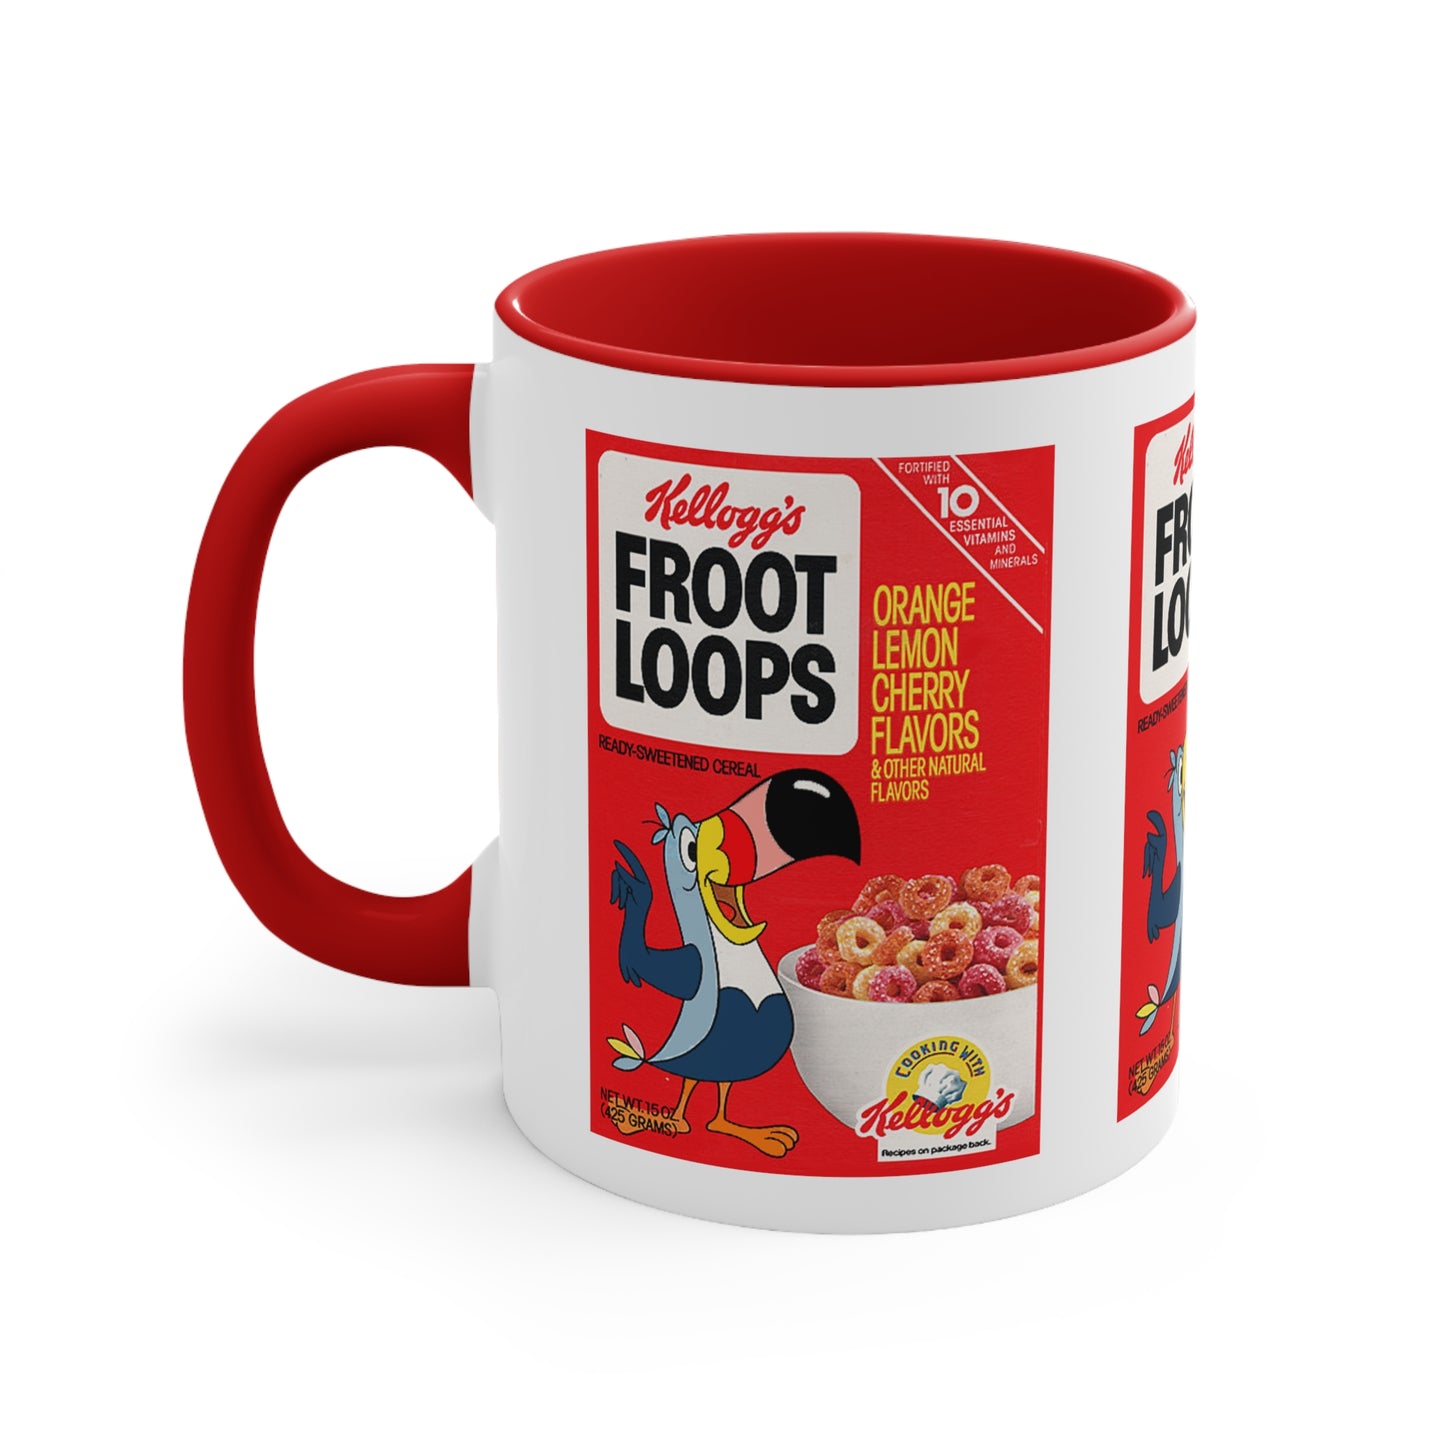 Vintage FROOT LOOPS Cereal Box Art Coffee Mugs 11oz